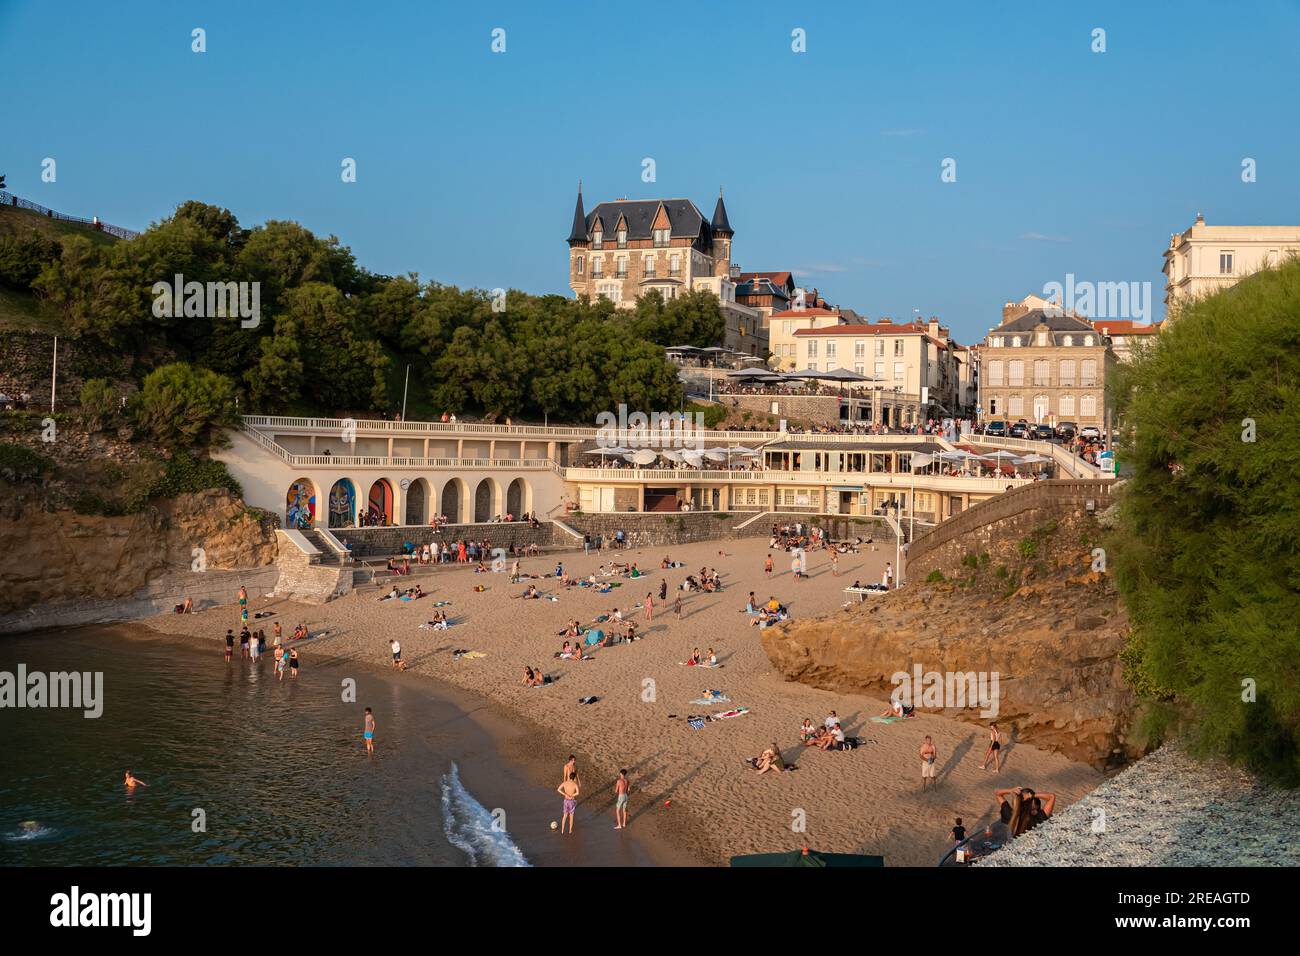 La spiaggia di Biarritz "Plage du Port Vieux" è piena di persone che fanno il bagno e prendono il sole in un pomeriggio d'estate. Foto Stock